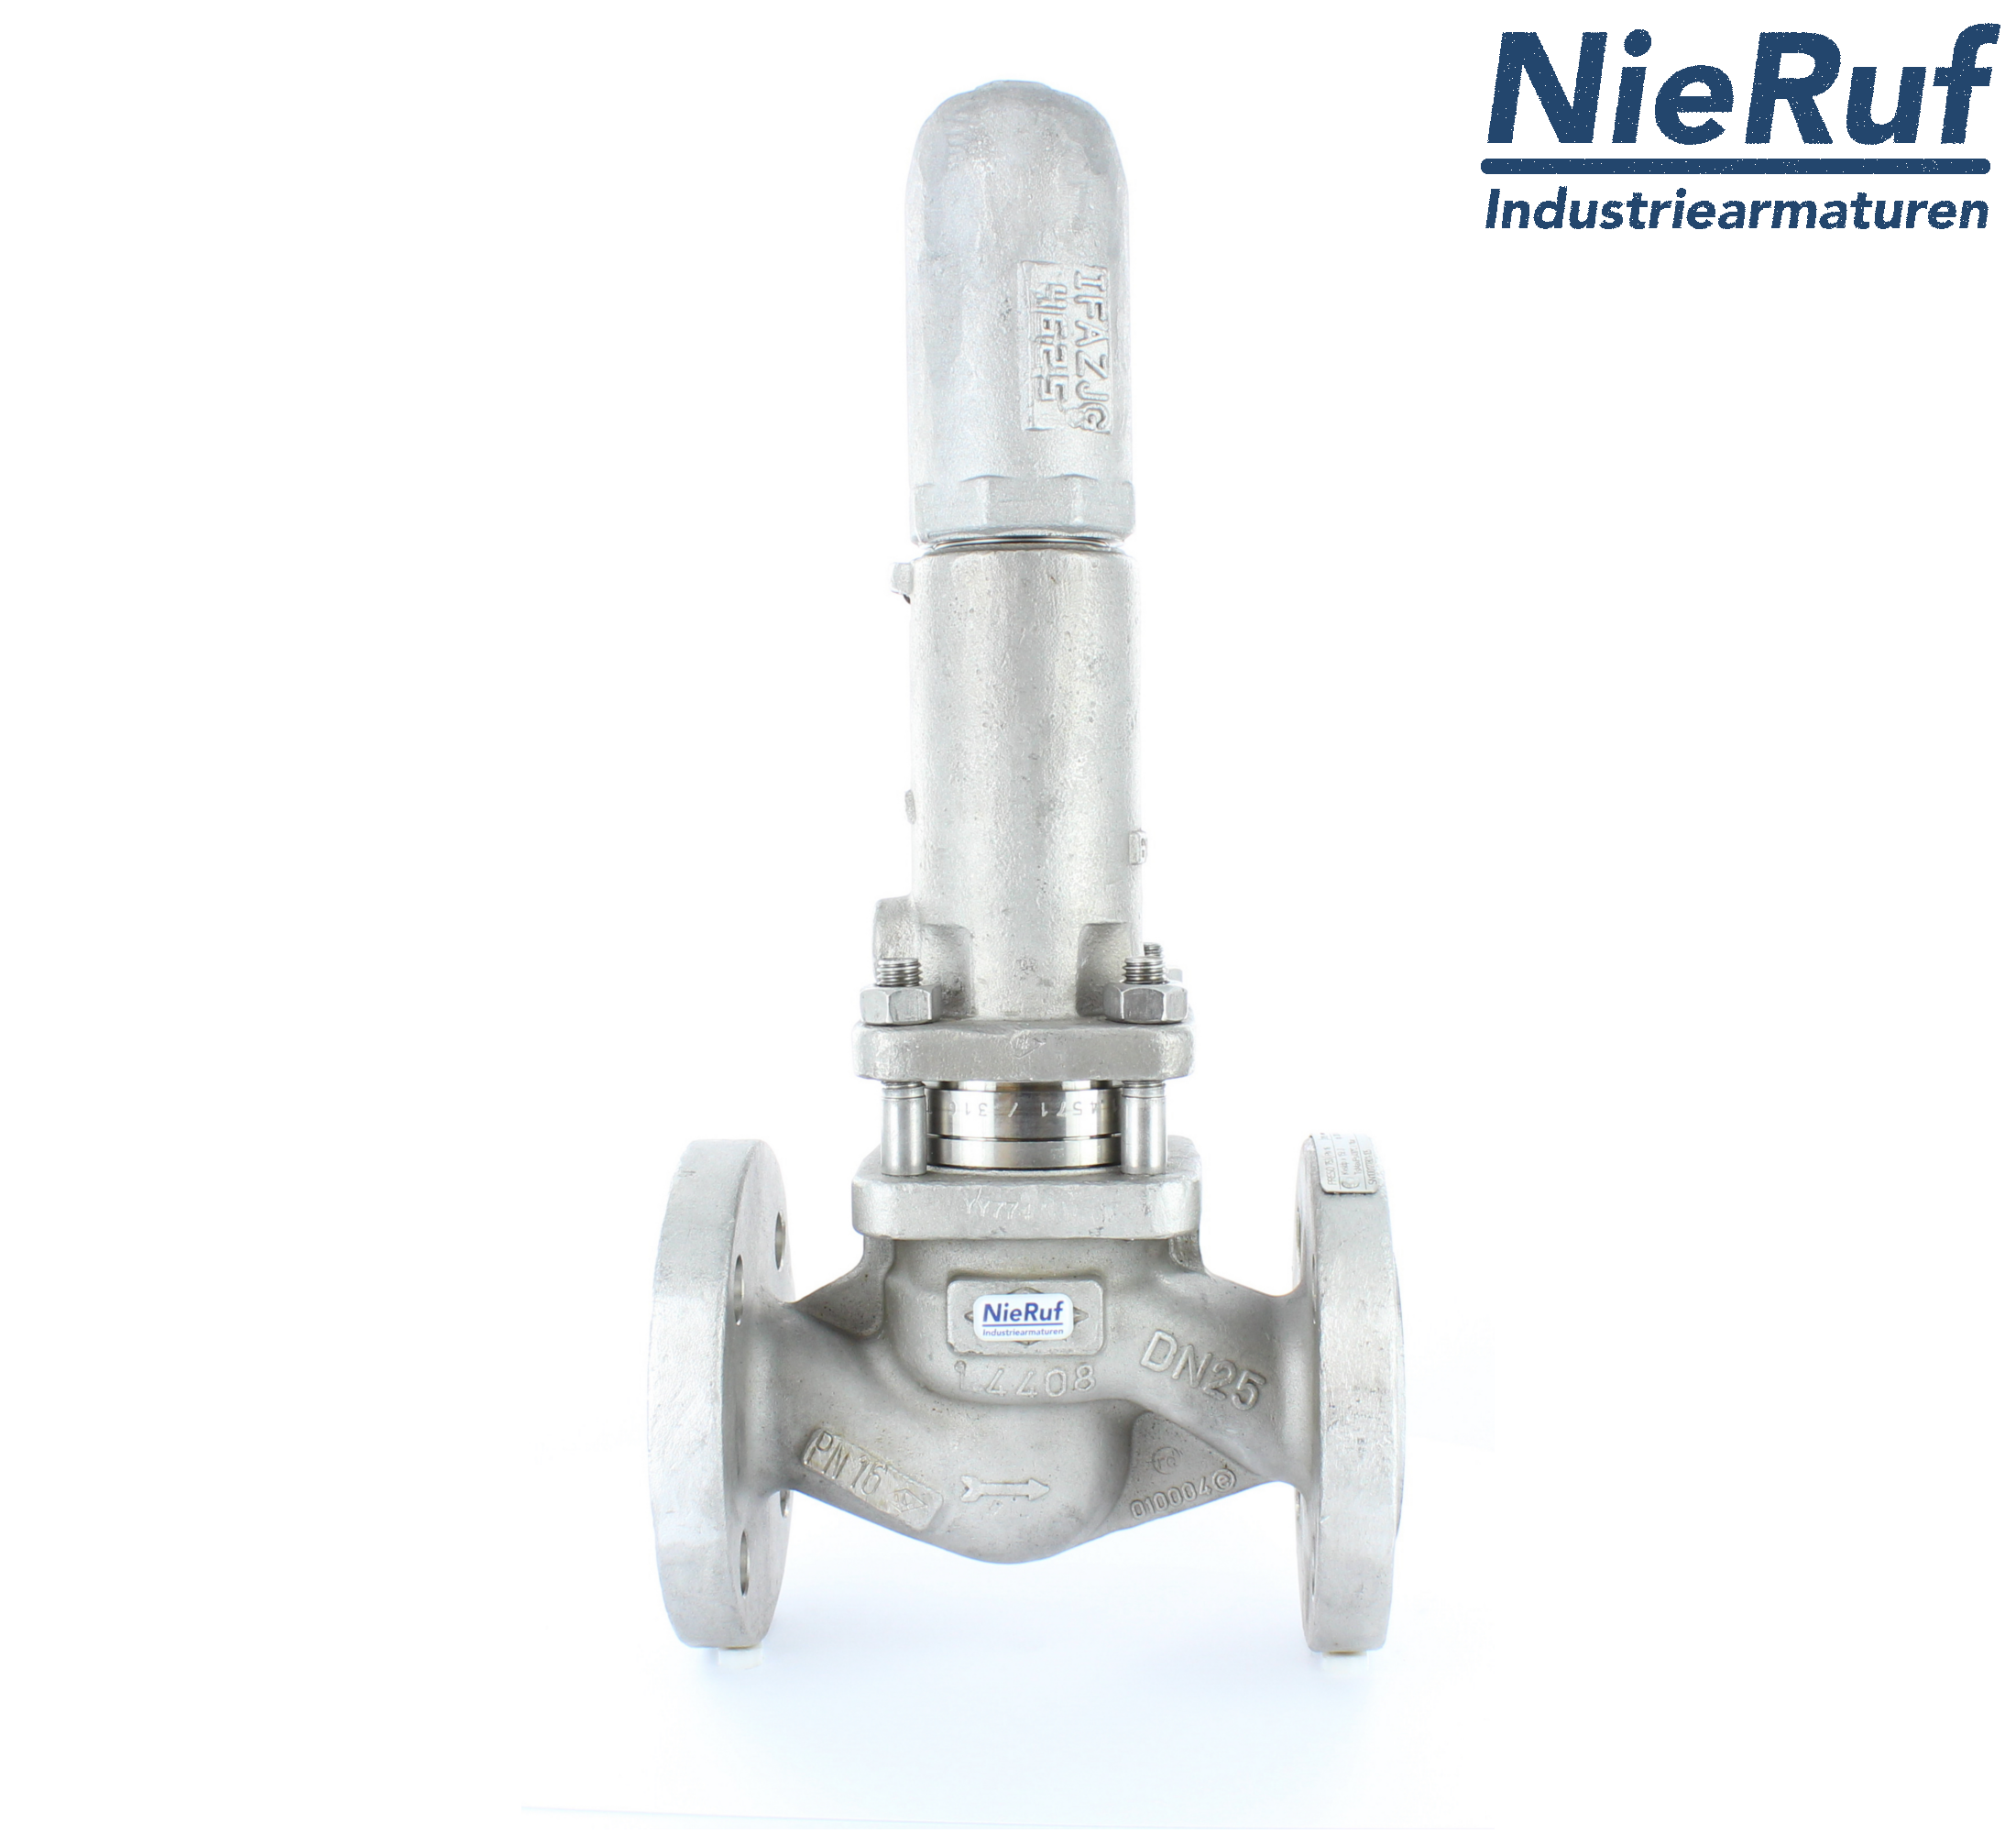 piston overflow valve DN 25 UV13 cast iron 1.0619+N 1,0 - 3,0 bar